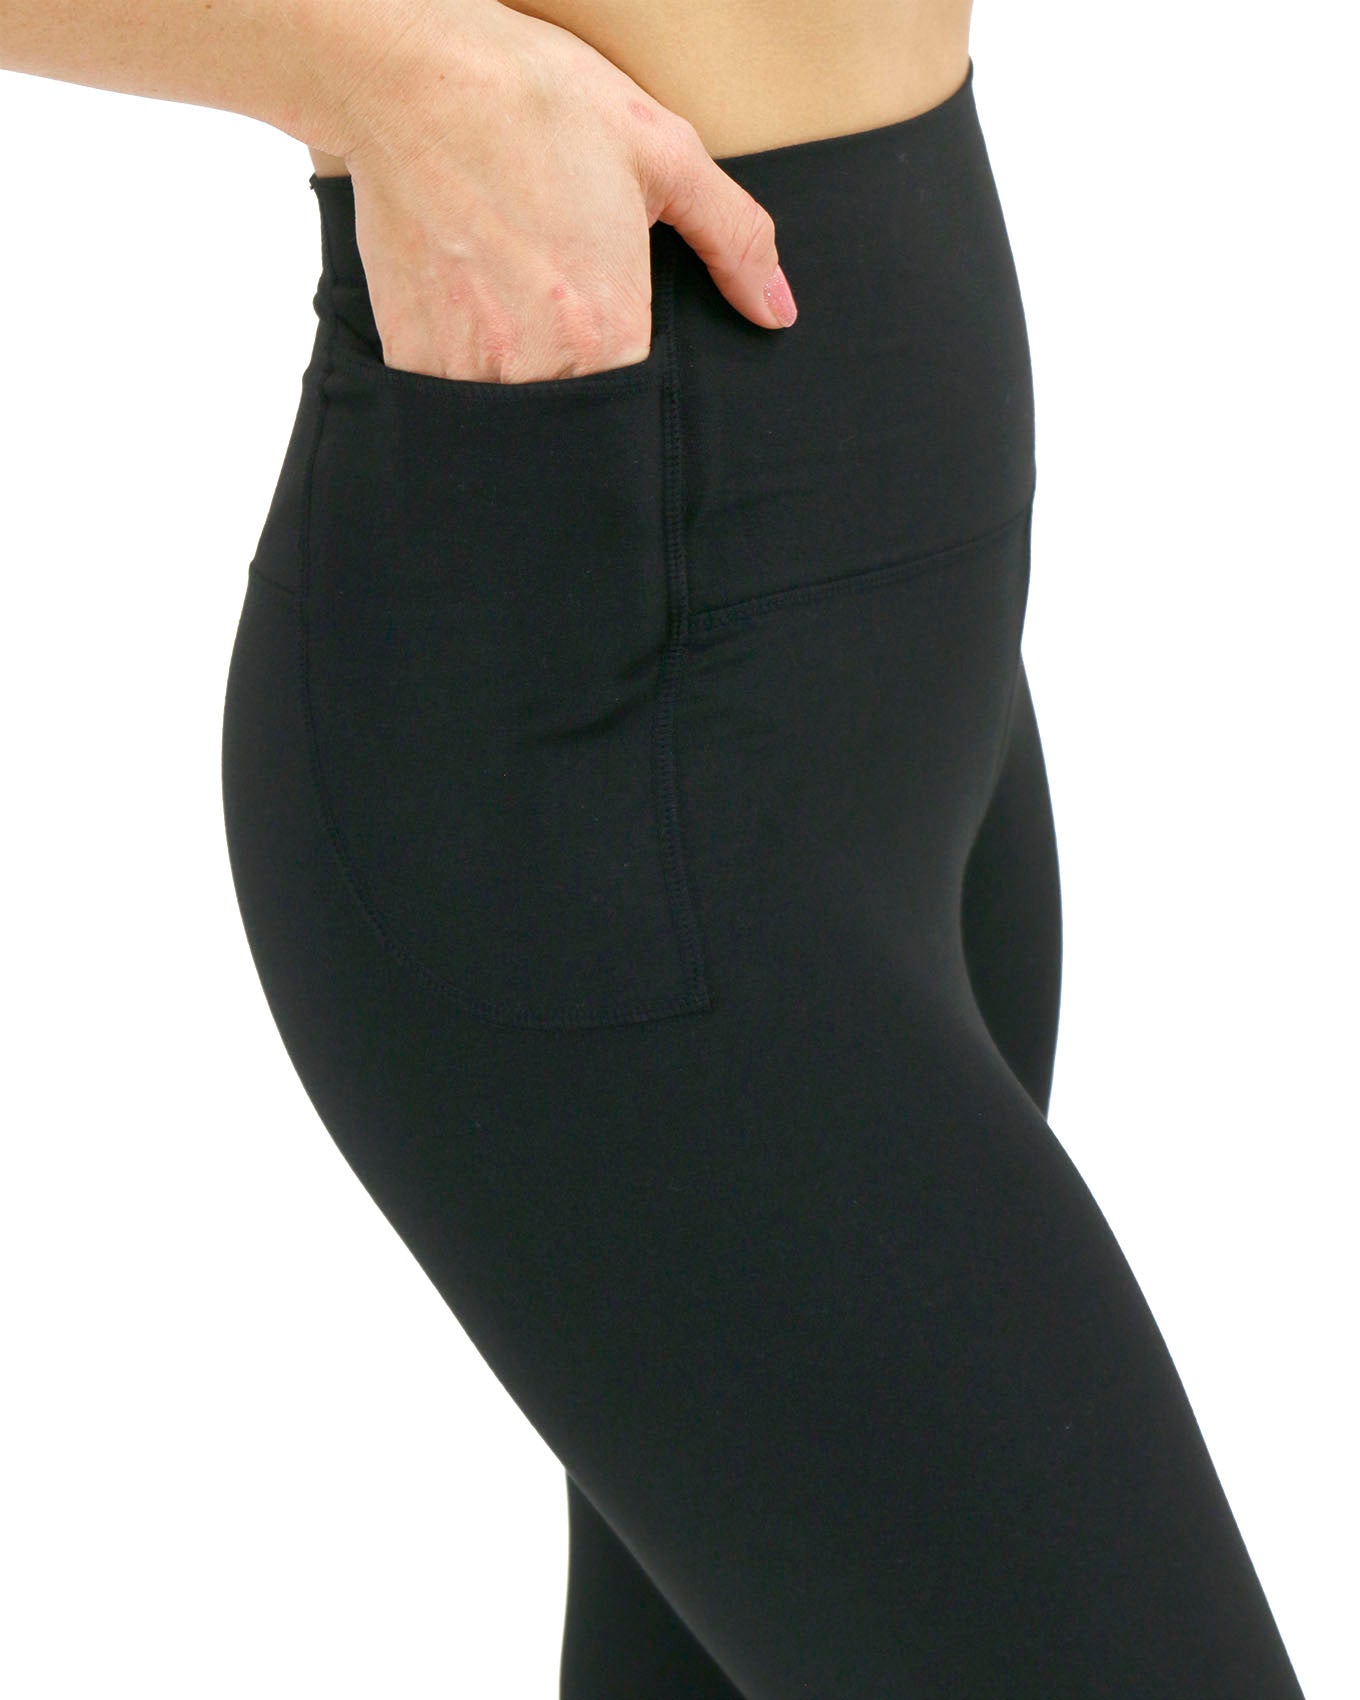 Womens Leggings-High Waisted Black Leggings for Women-Premium Jeggings for  Workout, Yoga